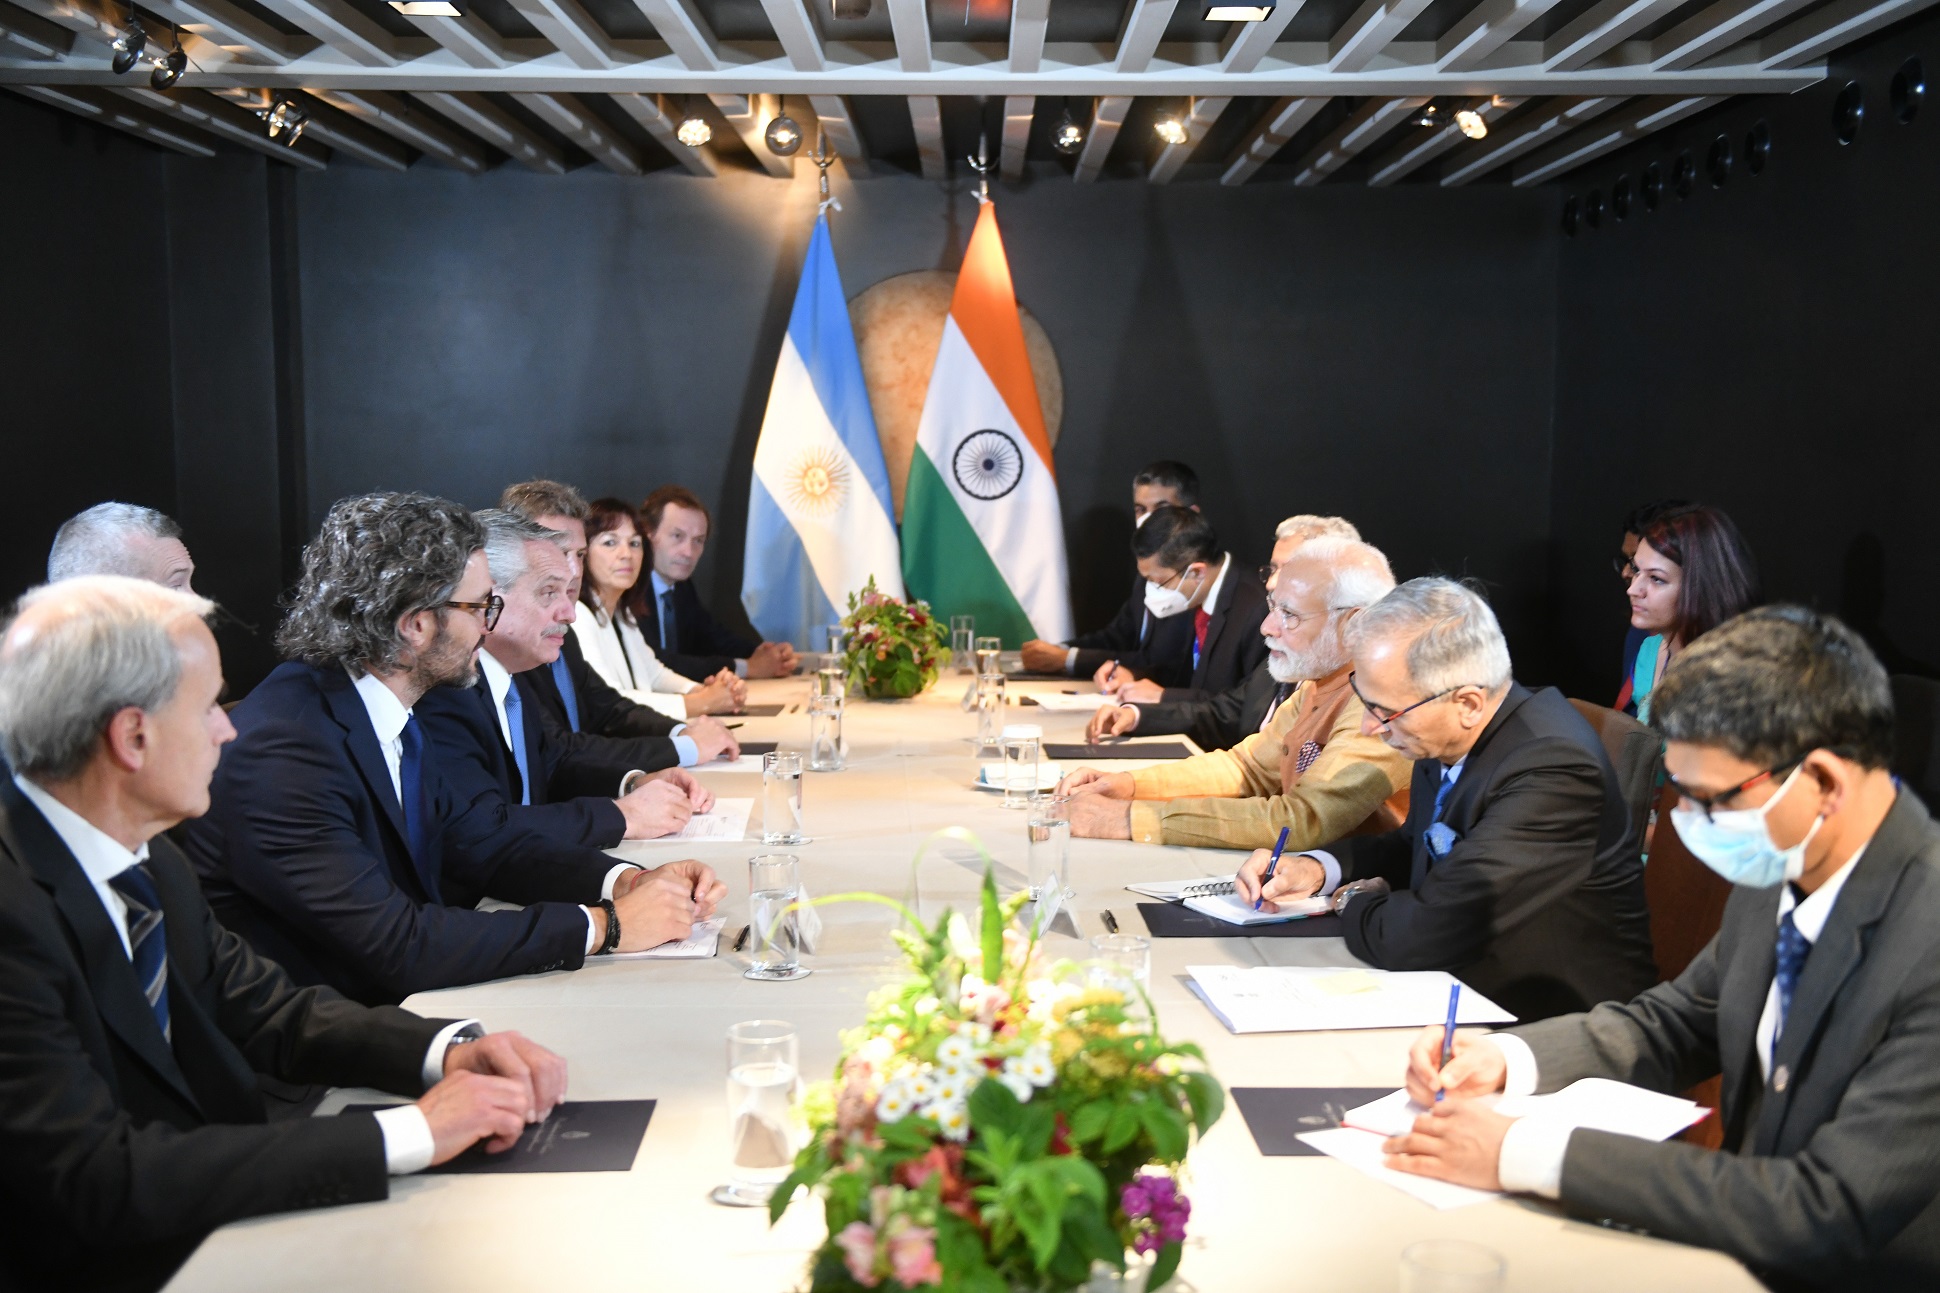 El presidente mantuvo una reunión bilateral con Narendra Modi, primer ministro de India